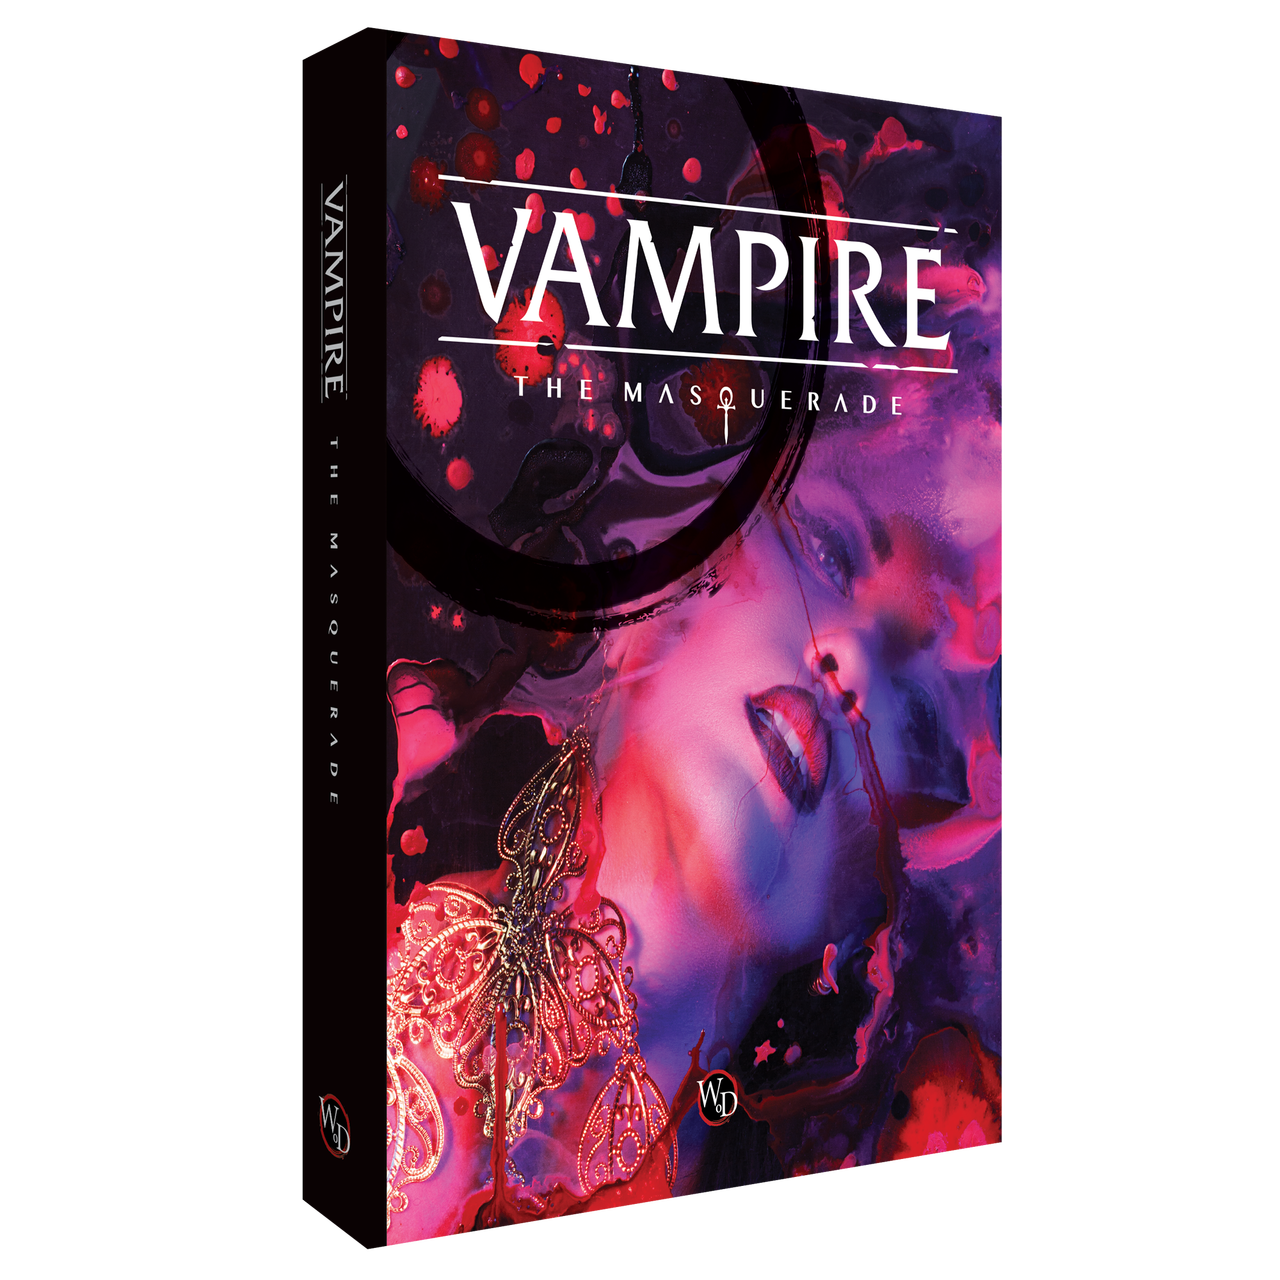 Vampire: The Masquerade 5th Edition Core Rulebook